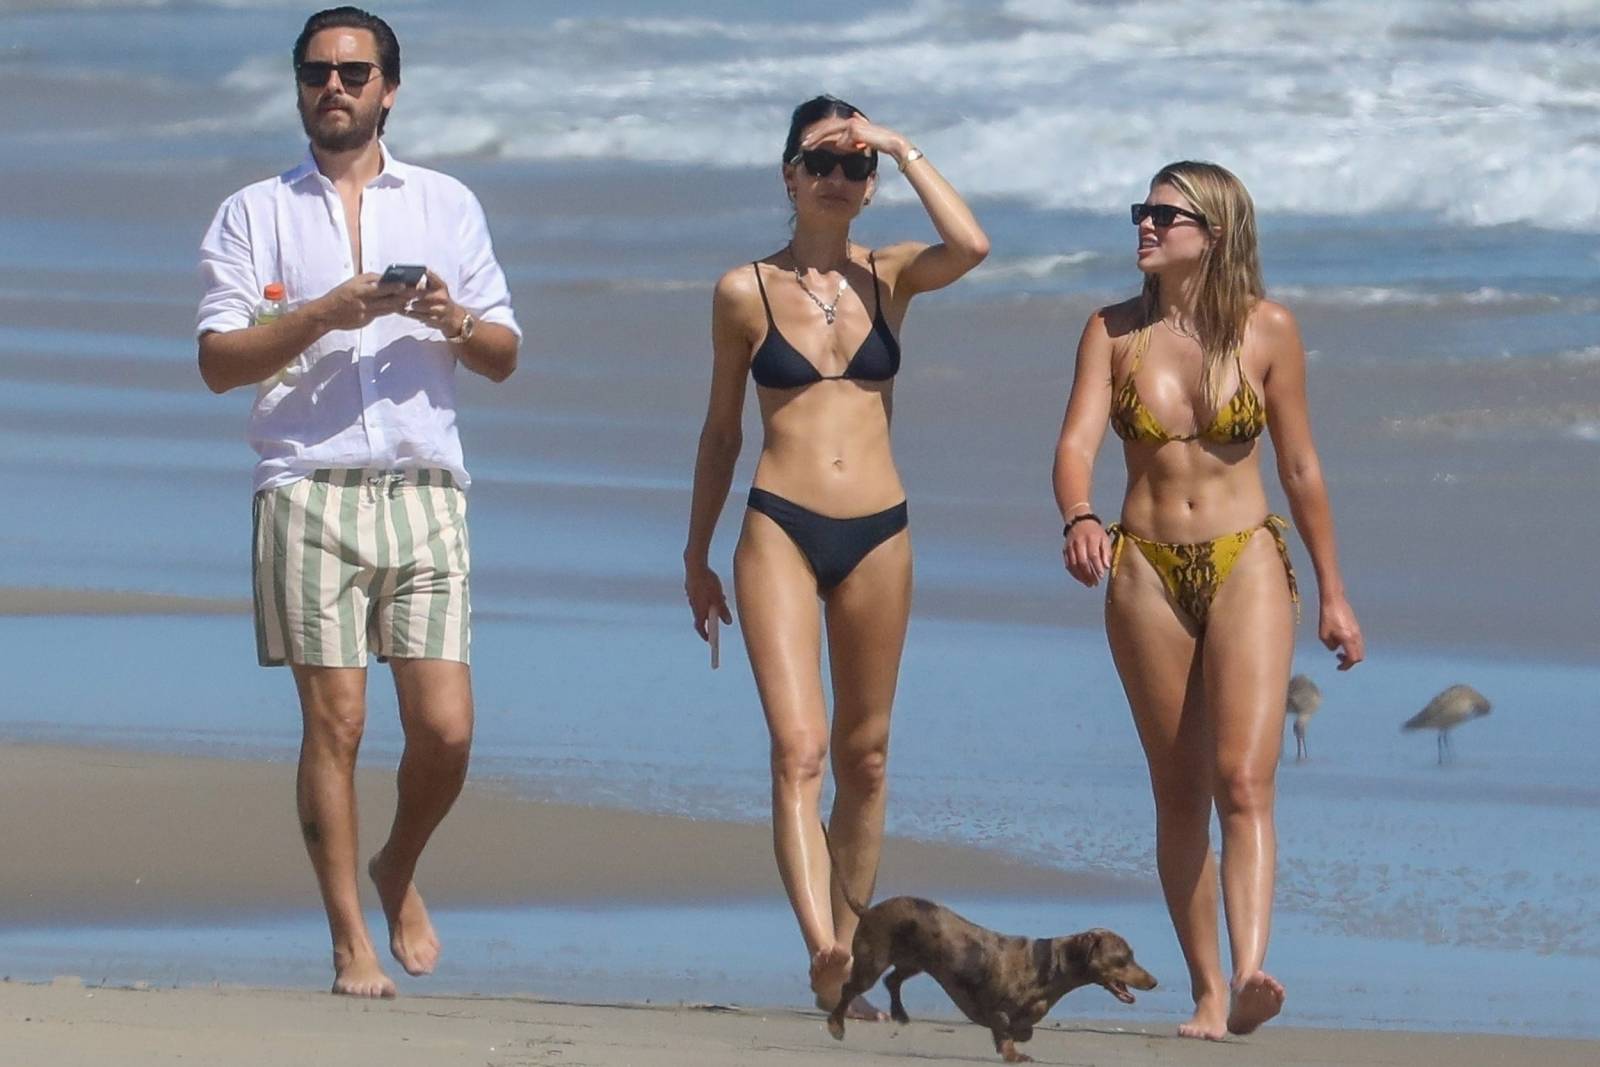 Sofia Richie â€“ In Yellow bikini on a beach in Malibu